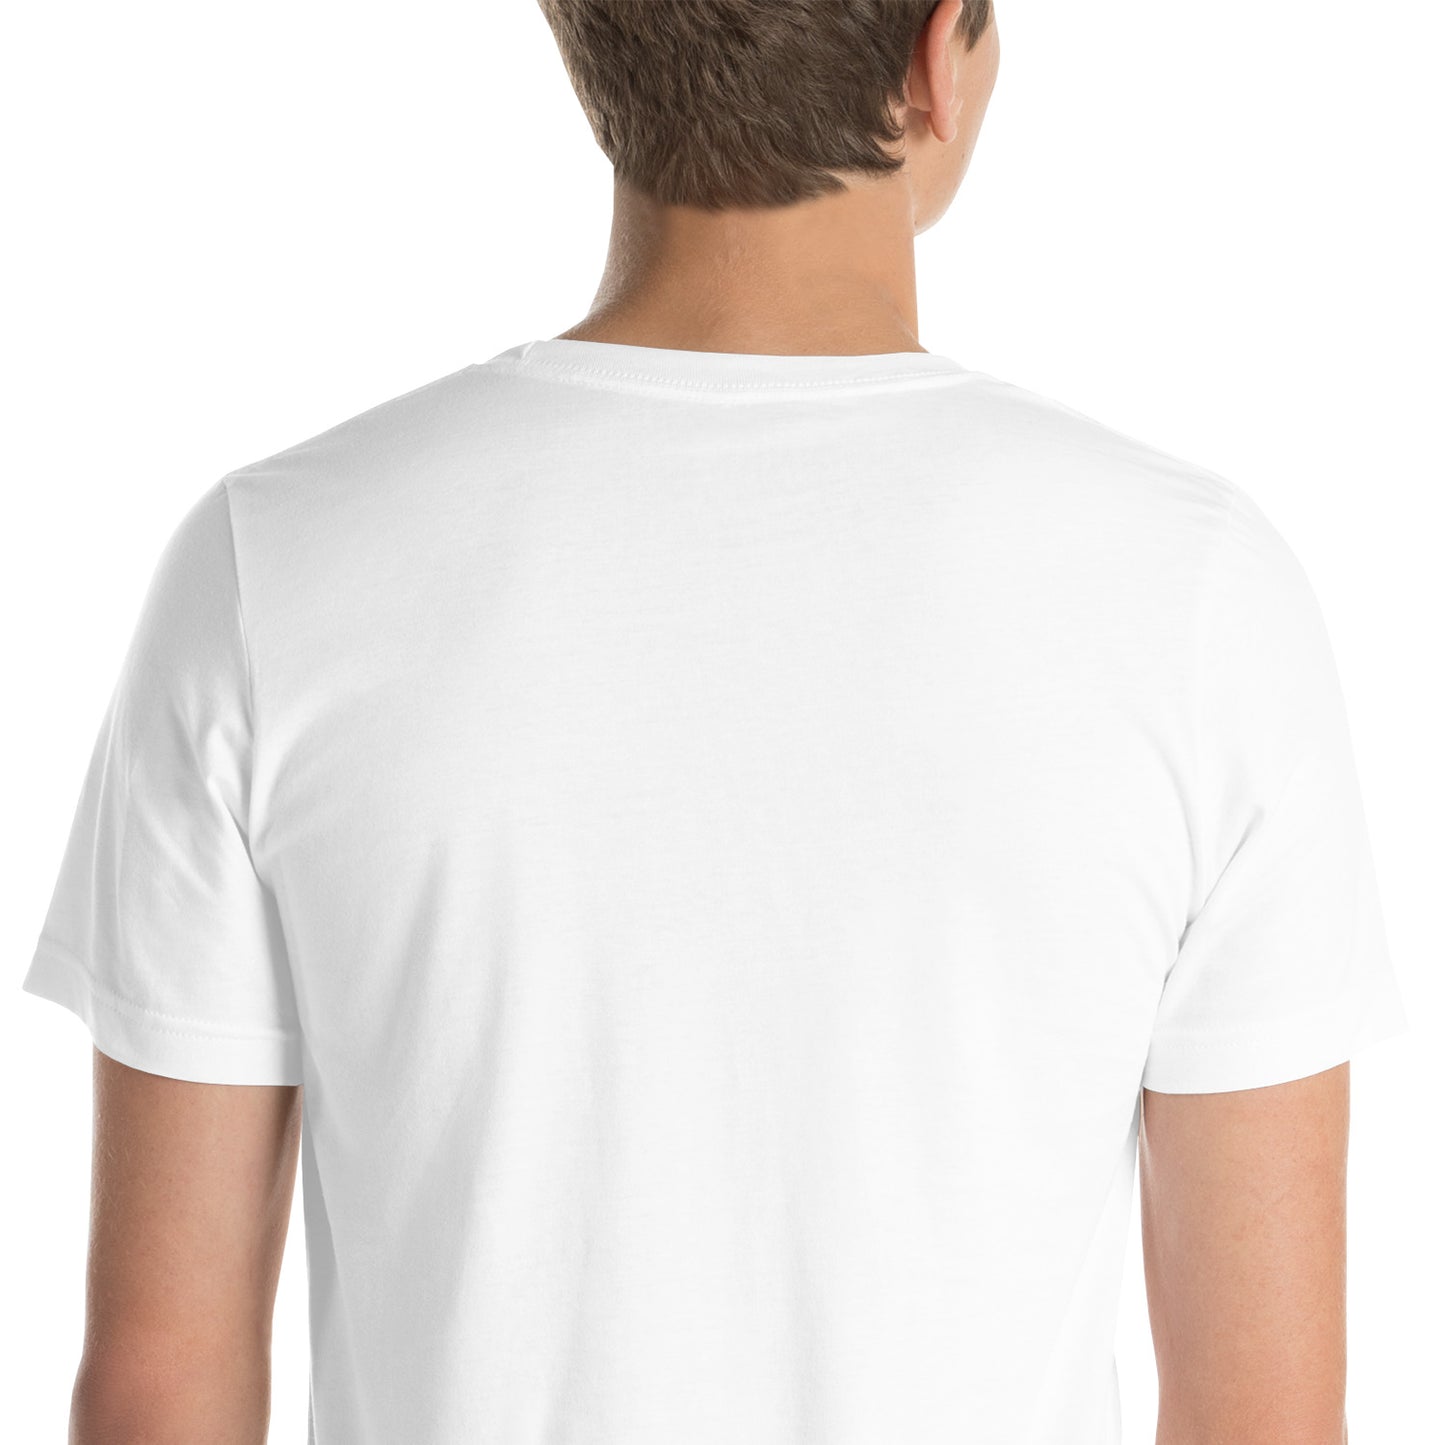 Illuminated Unisex t-shirt